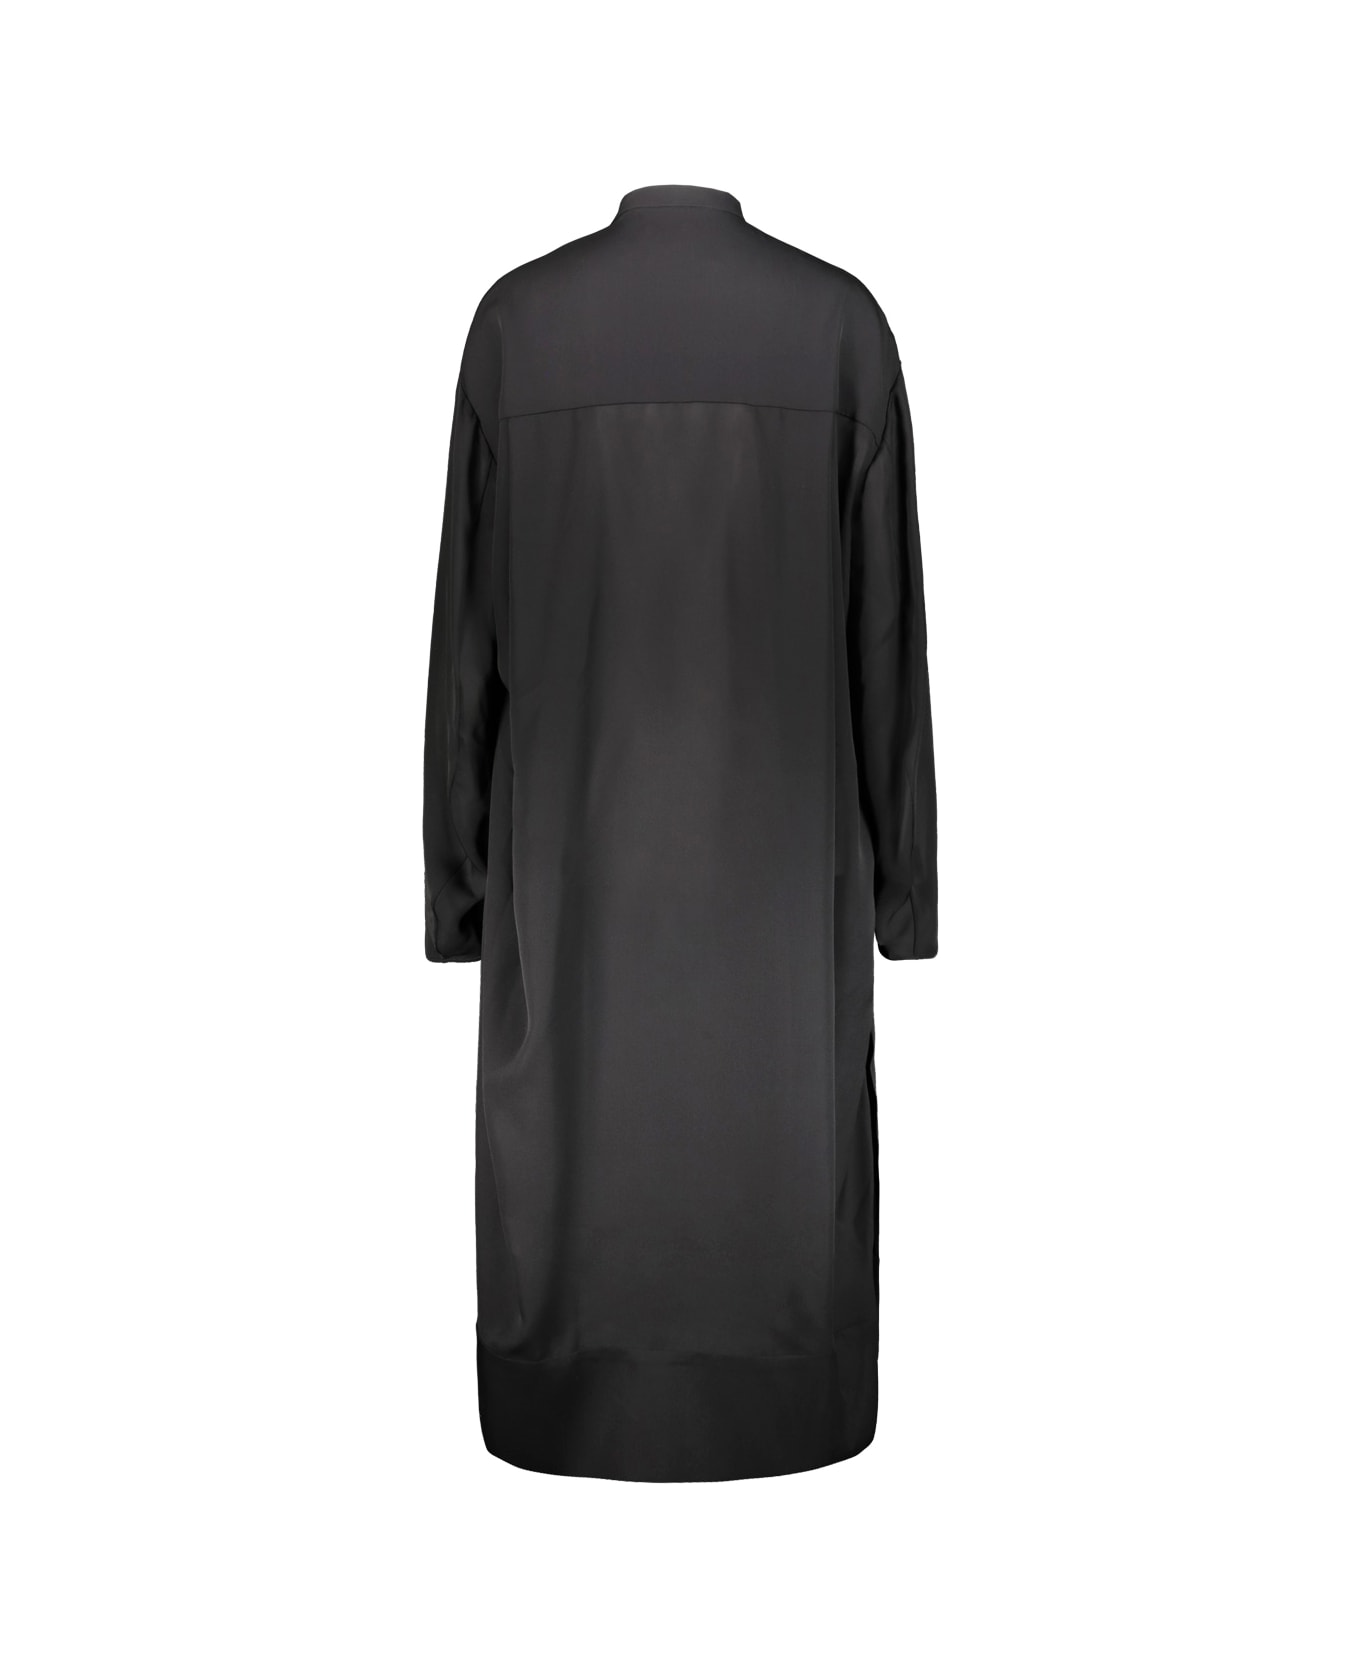 Khaite Brom Dress - Black